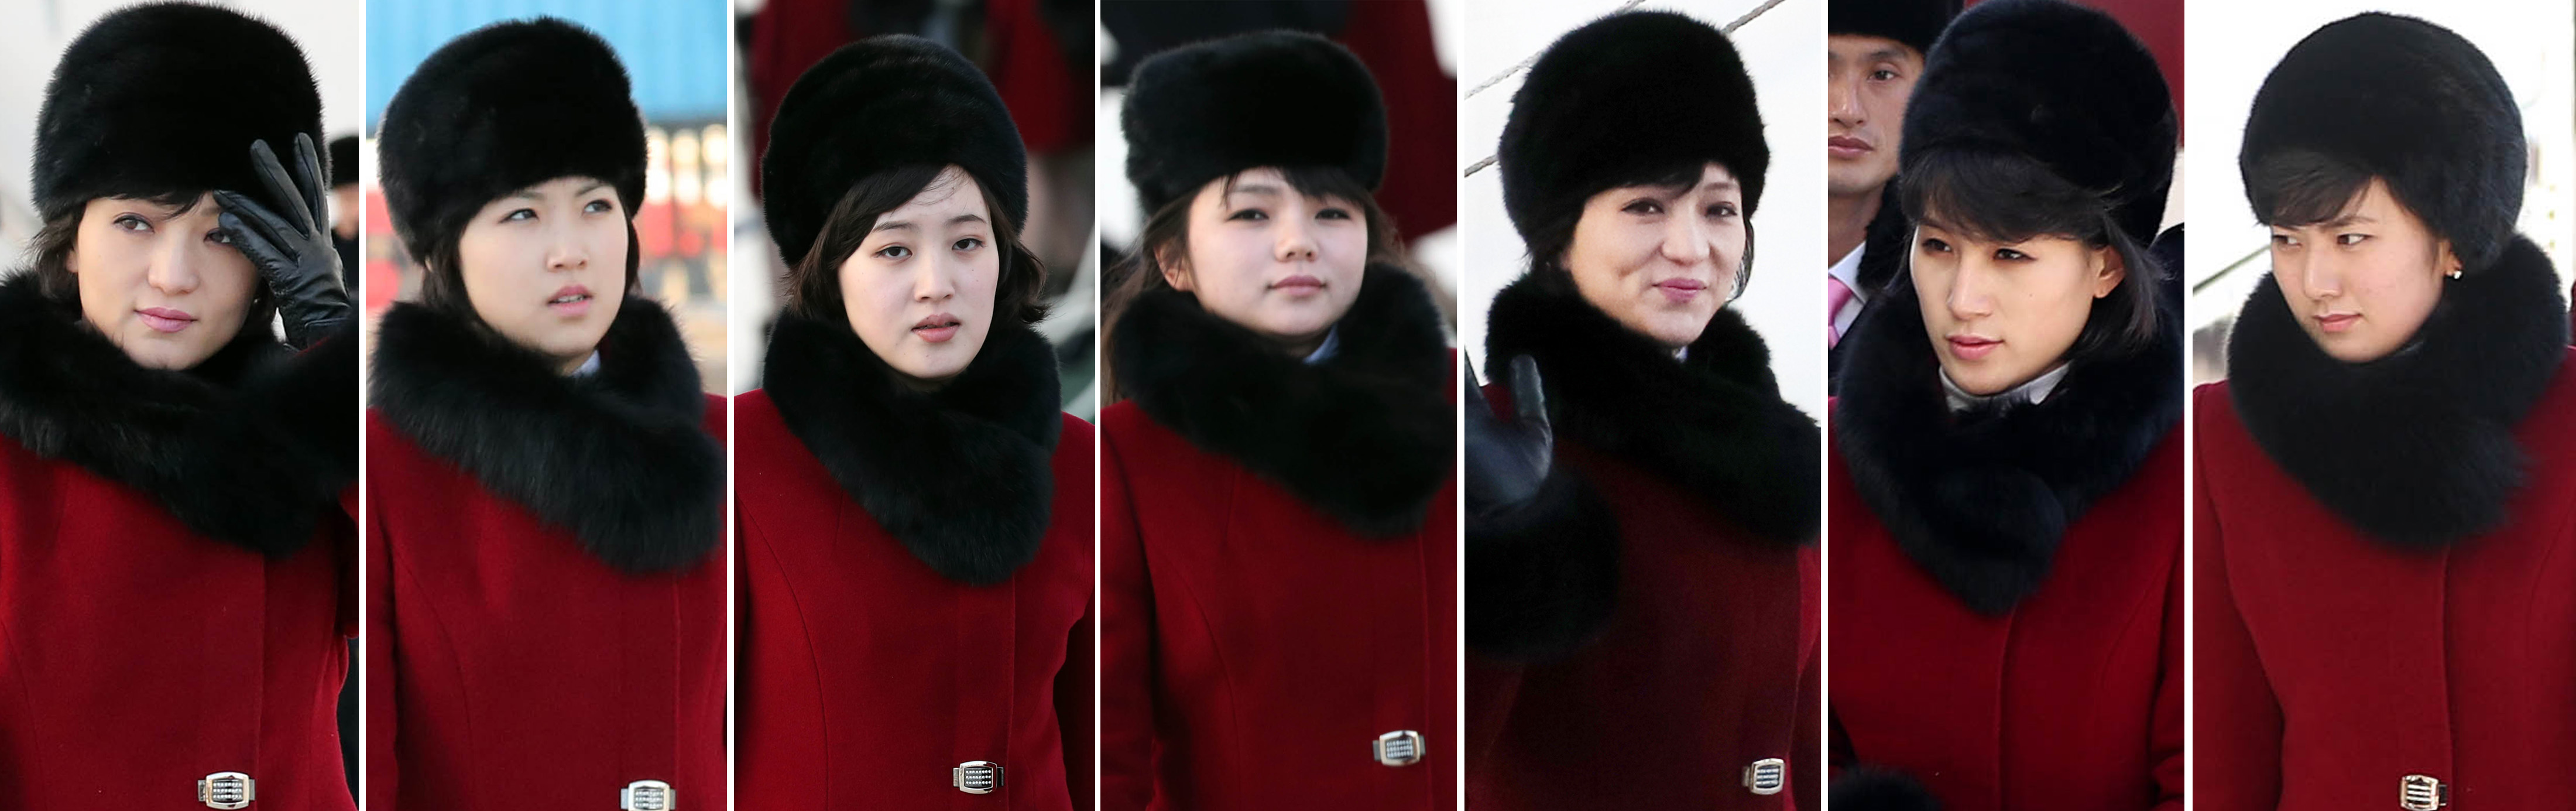 눈길끄는 북한 미녀 예술단원들